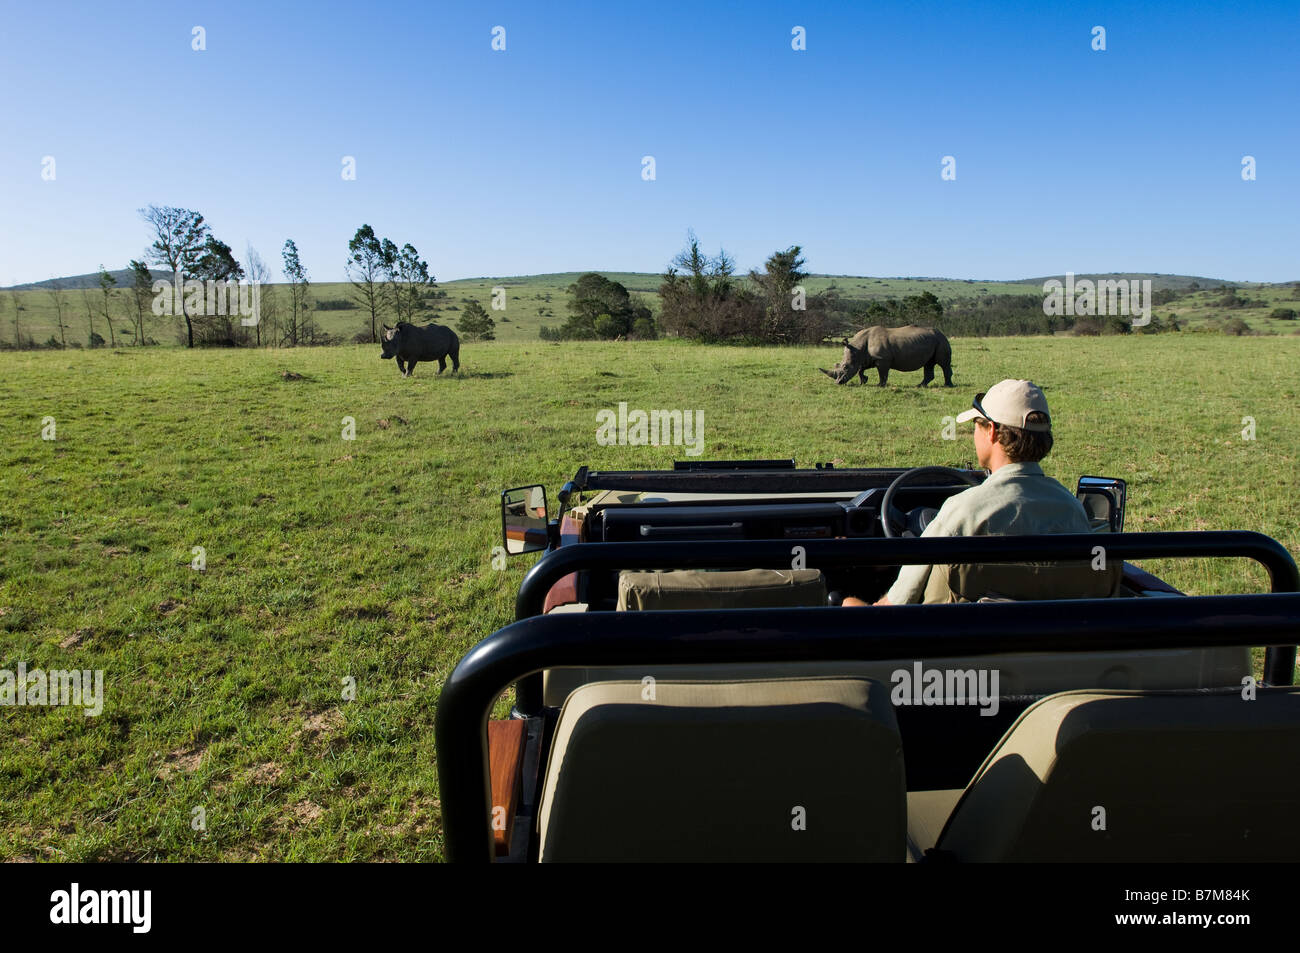 Aufnahme auf eine Pirschfahrt in Südafrika mit dem Ranger in den offenen Wagen und 2 Rhinos im Hintergrund sitzen Stockfoto